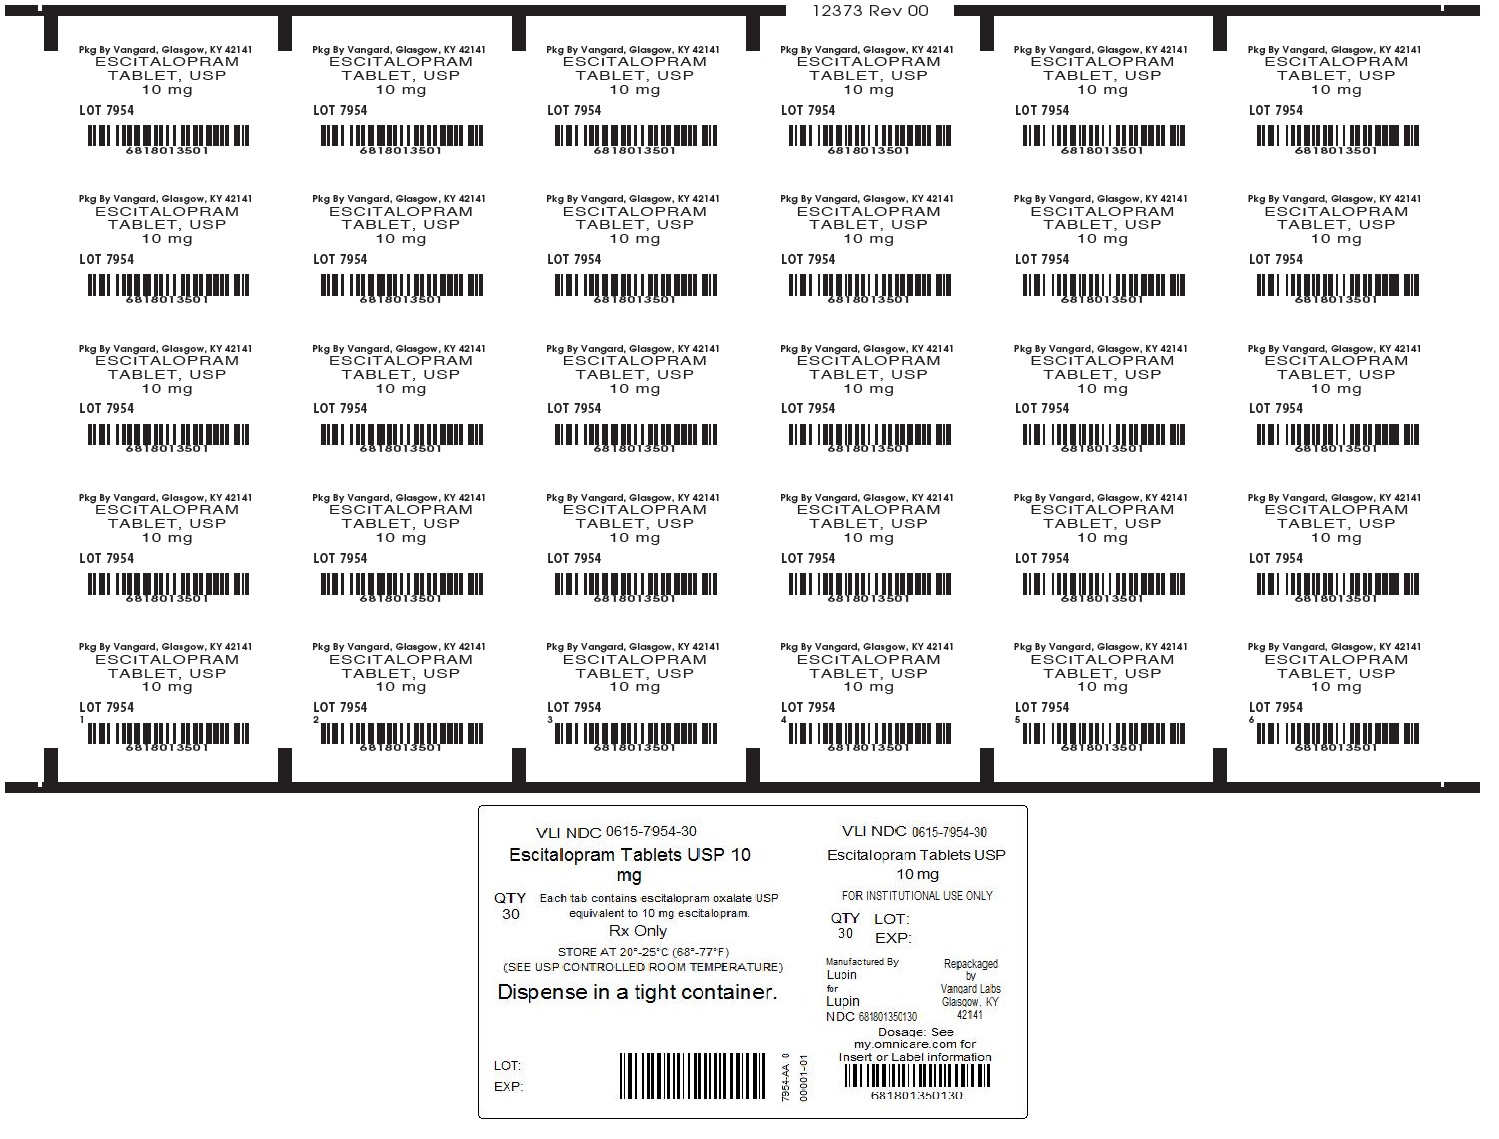 Escitalopram 10mg unit-dose box label